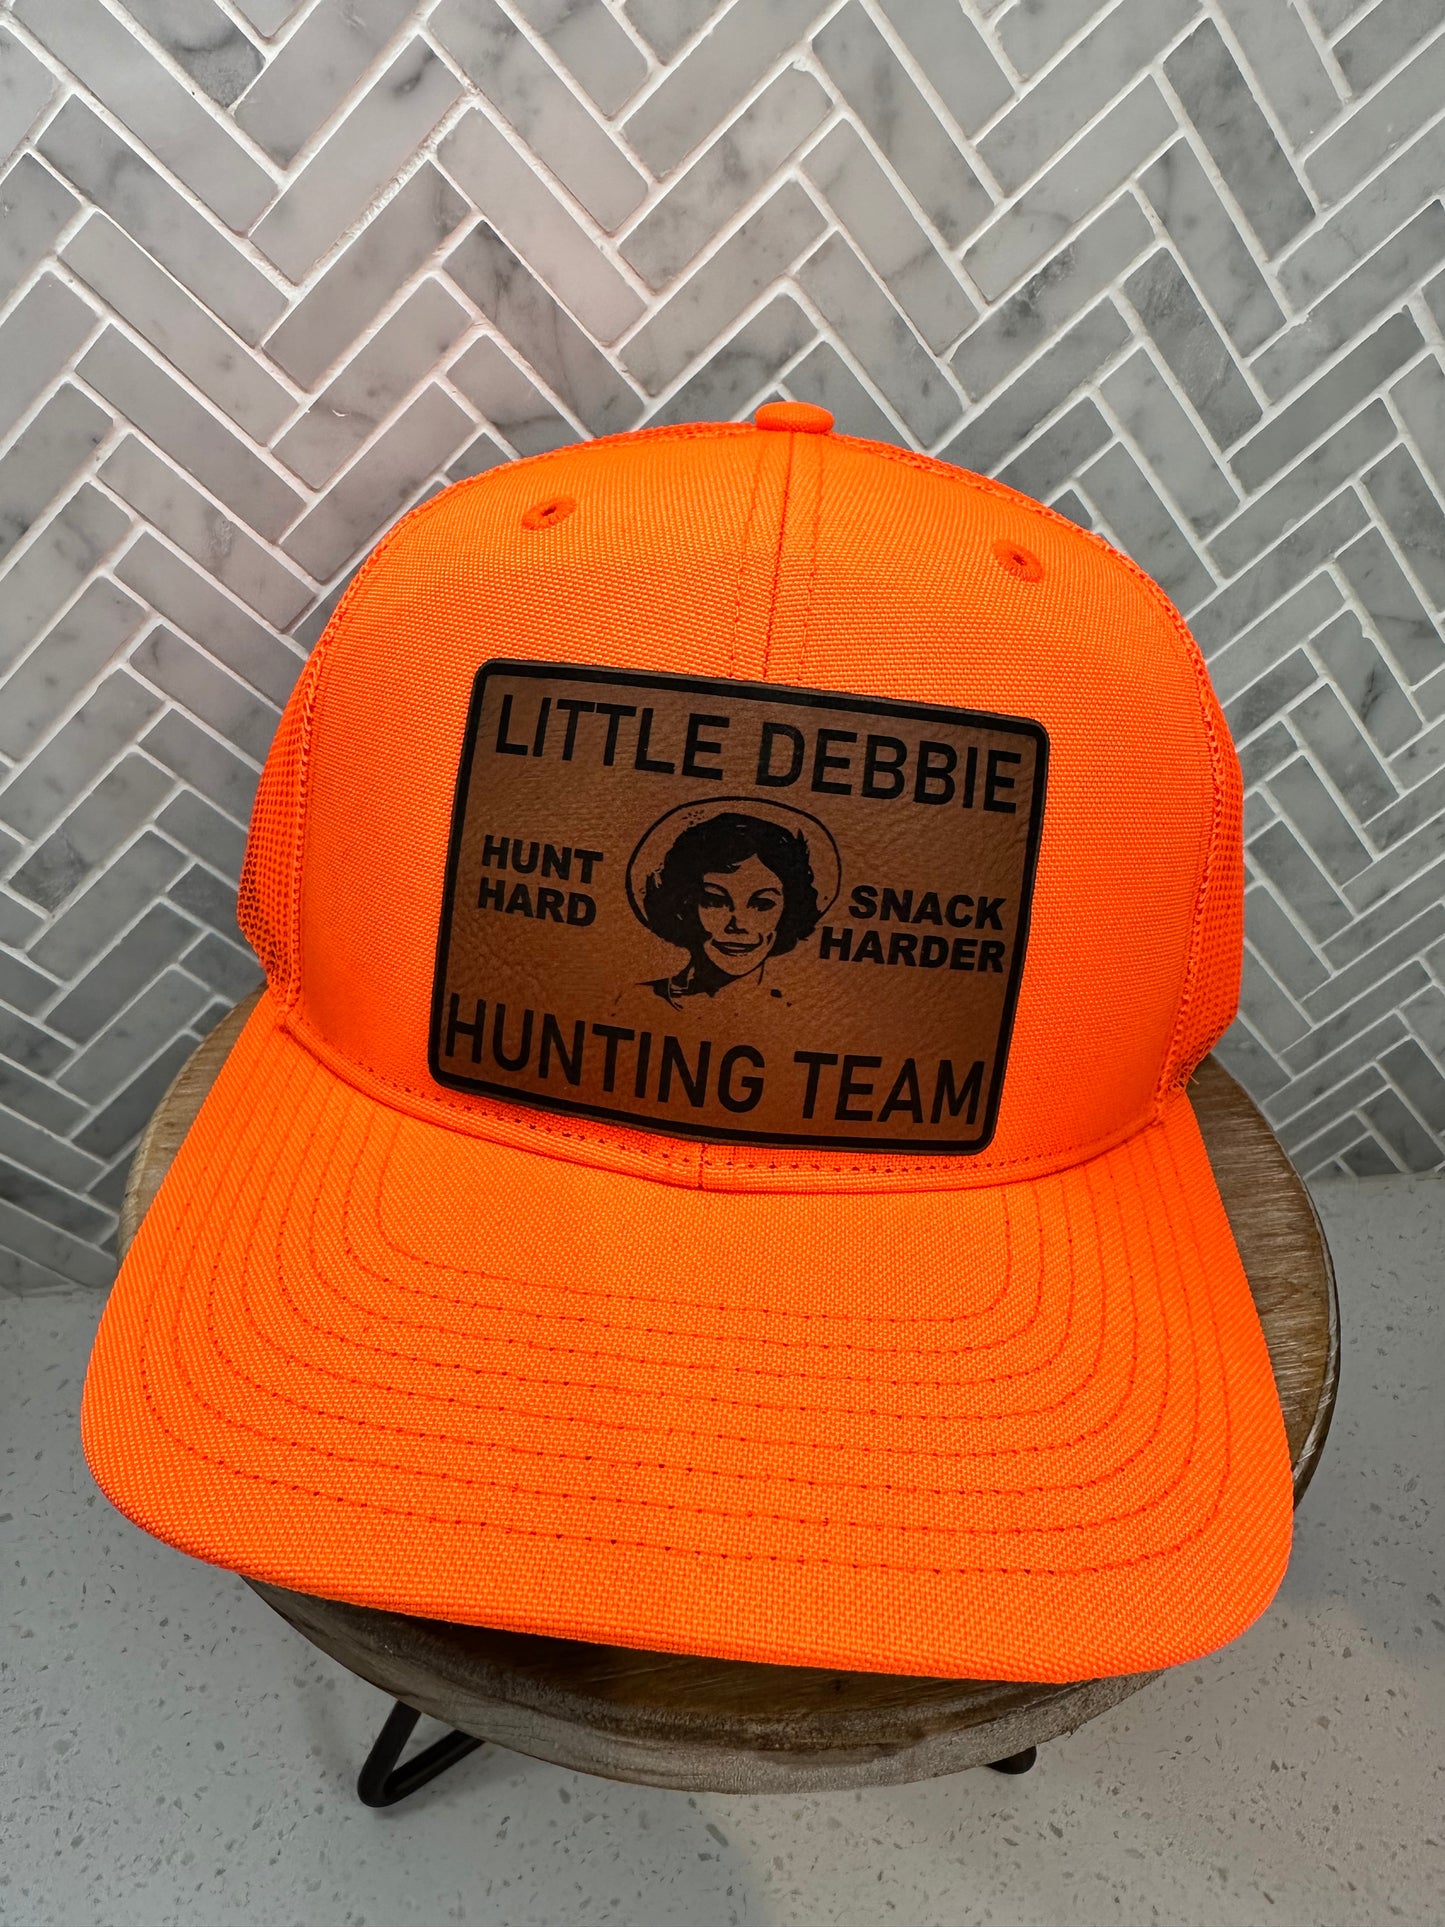 Little Debbie Hunting Team Hat – After Hours Laser Engraving